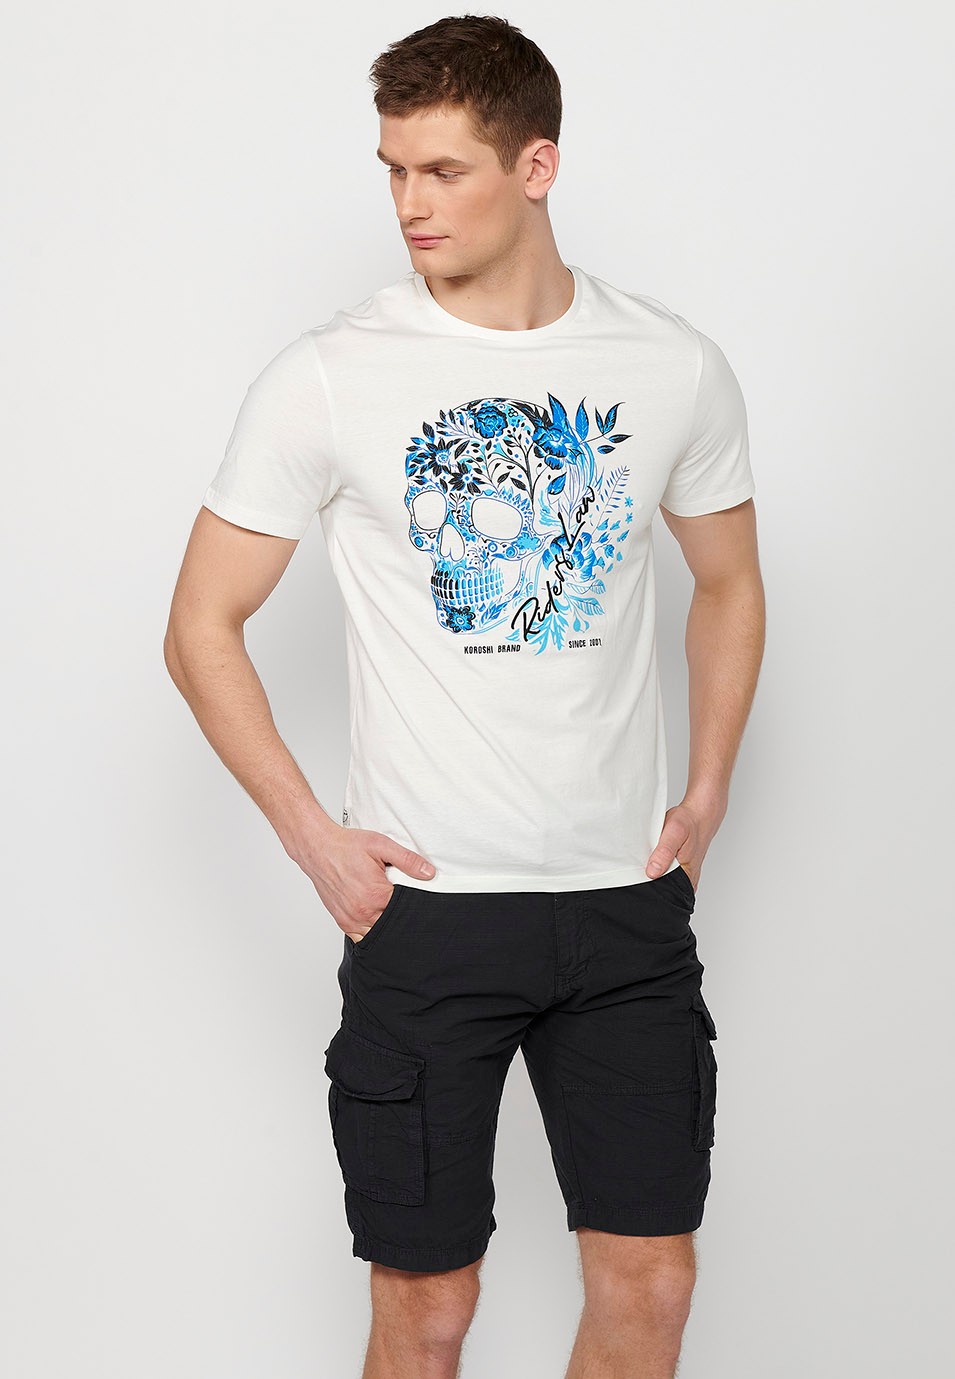 Camiseta de manga corta de algodon, estampado delantero, color blanco para hombre